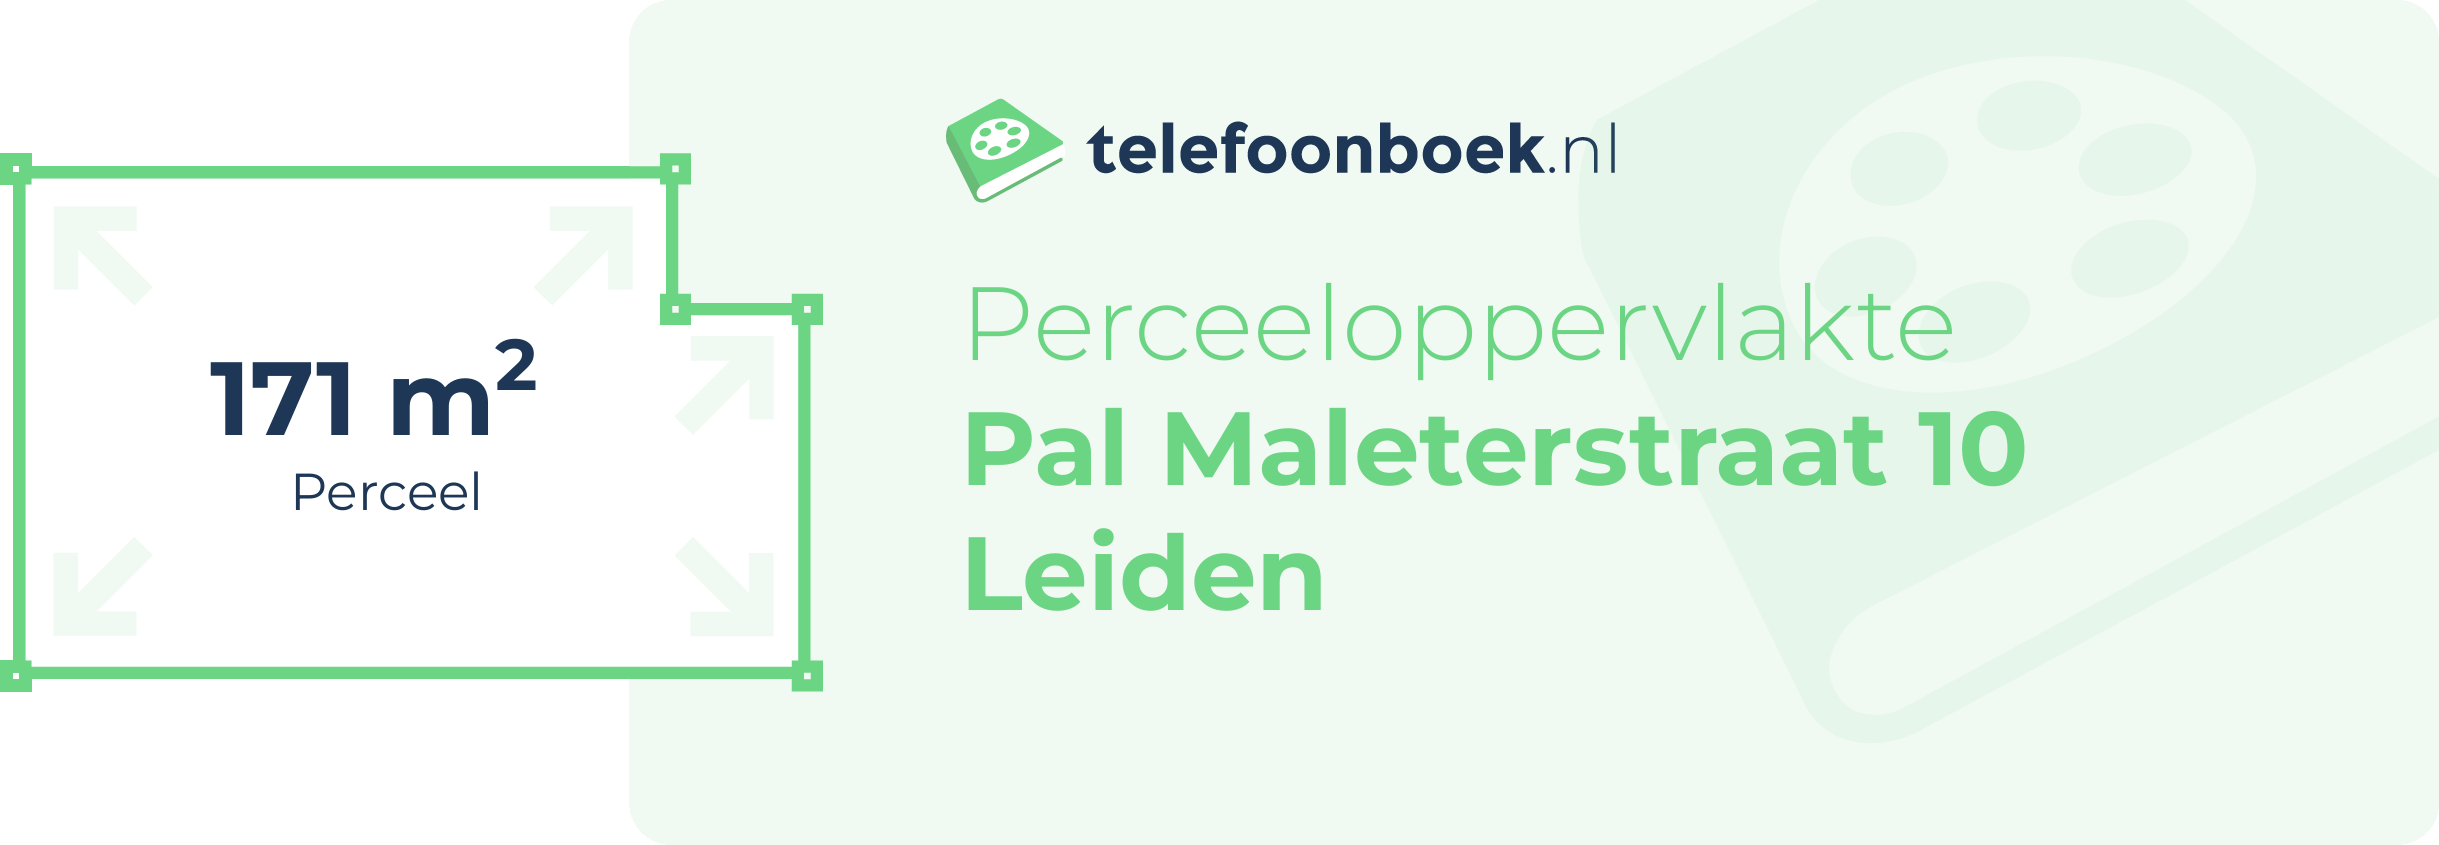 Perceeloppervlakte Pal Maleterstraat 10 Leiden